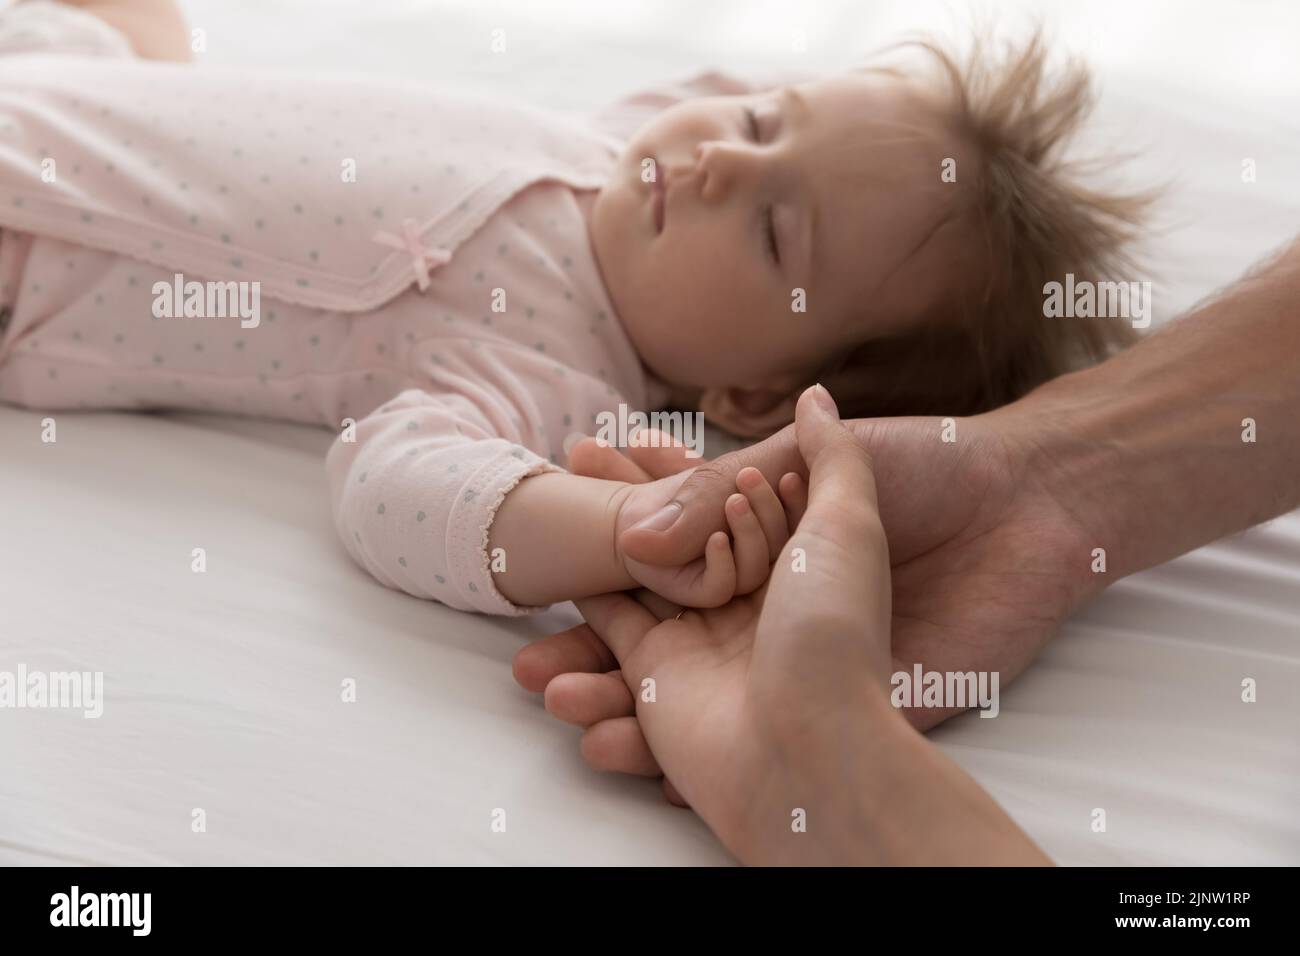 Los padres cariñosos tocan el brazo minúsculo recién nacido durmiendo bebé, primer plano Foto de stock